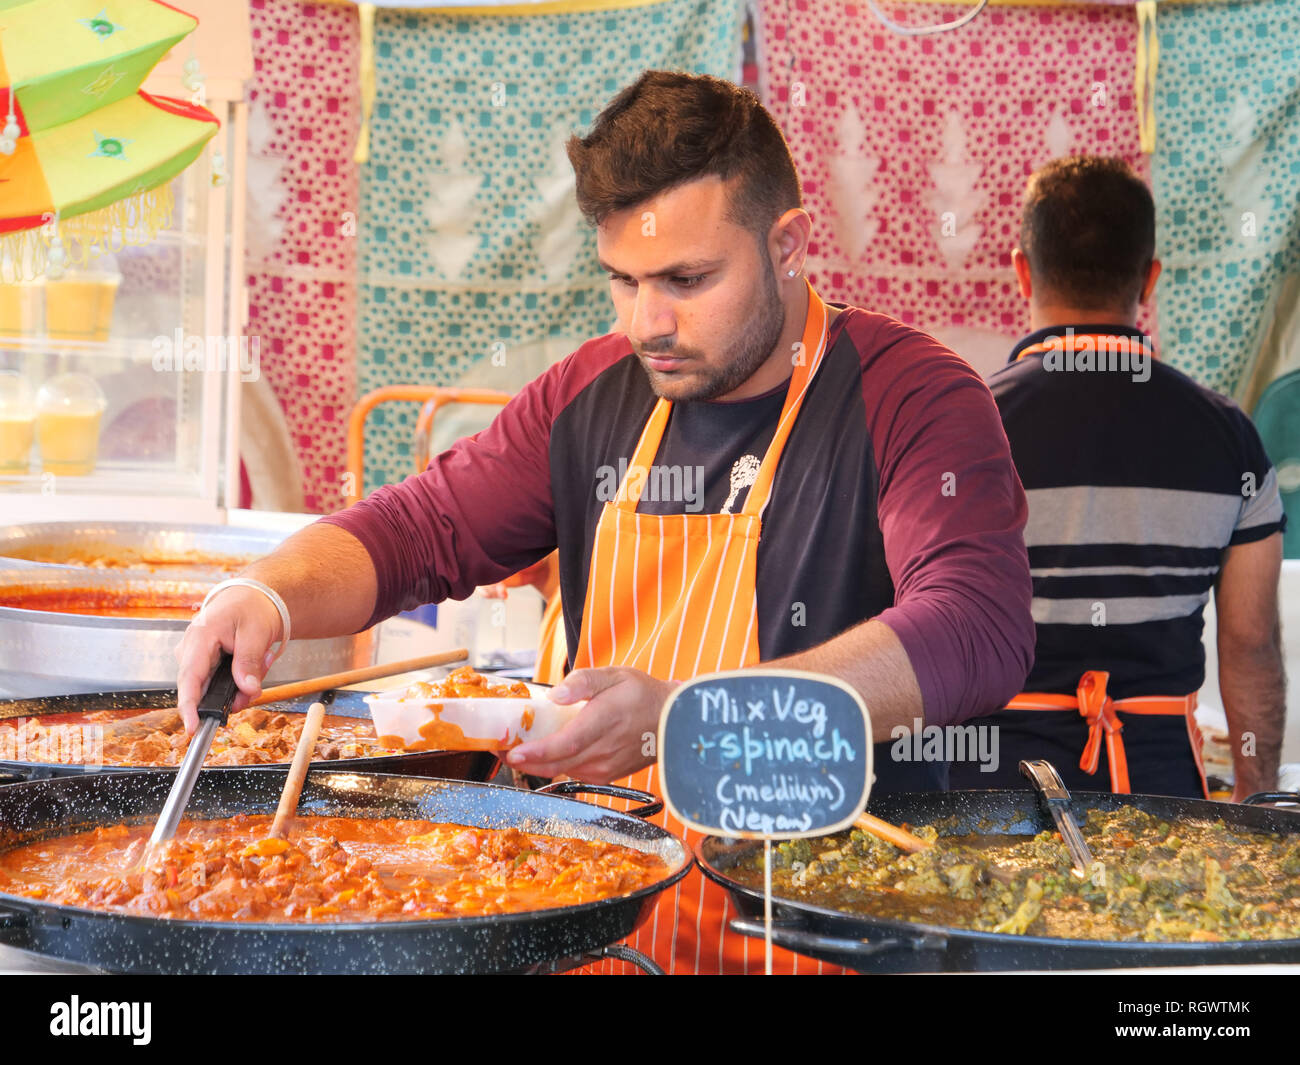 Wöchentliche Street Food Markt mit exotischen Speisen aus der ganzen Welt für Einheimische und Touristen in der Innenstadt von Perth, Western Australia. Stockfoto